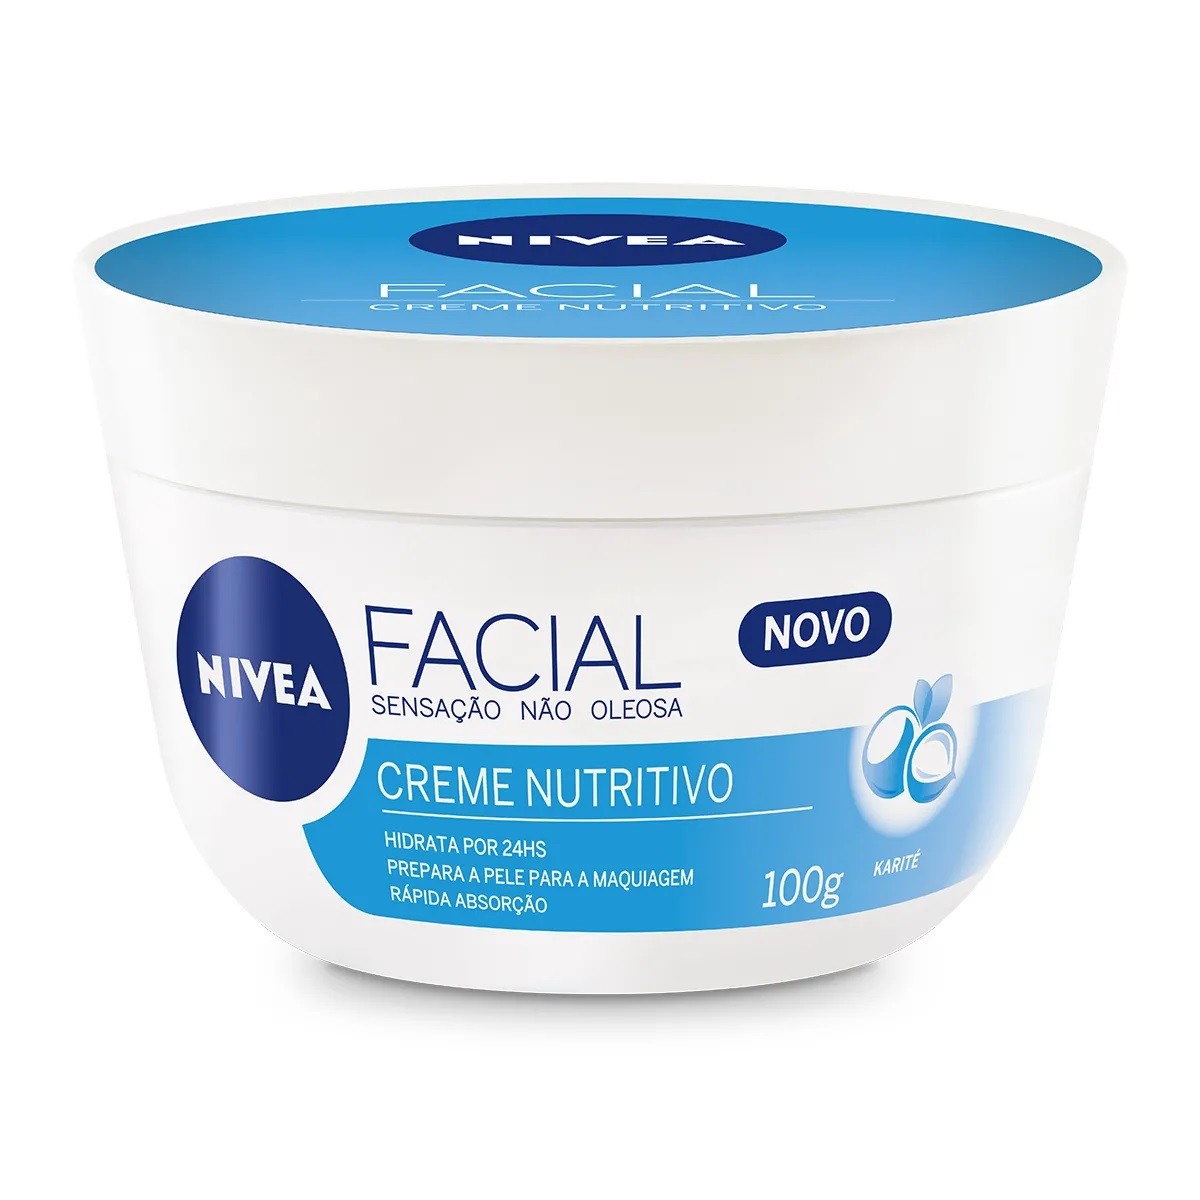 Creme Nutritivo Facial, Nivea  (Foto: divulgação)